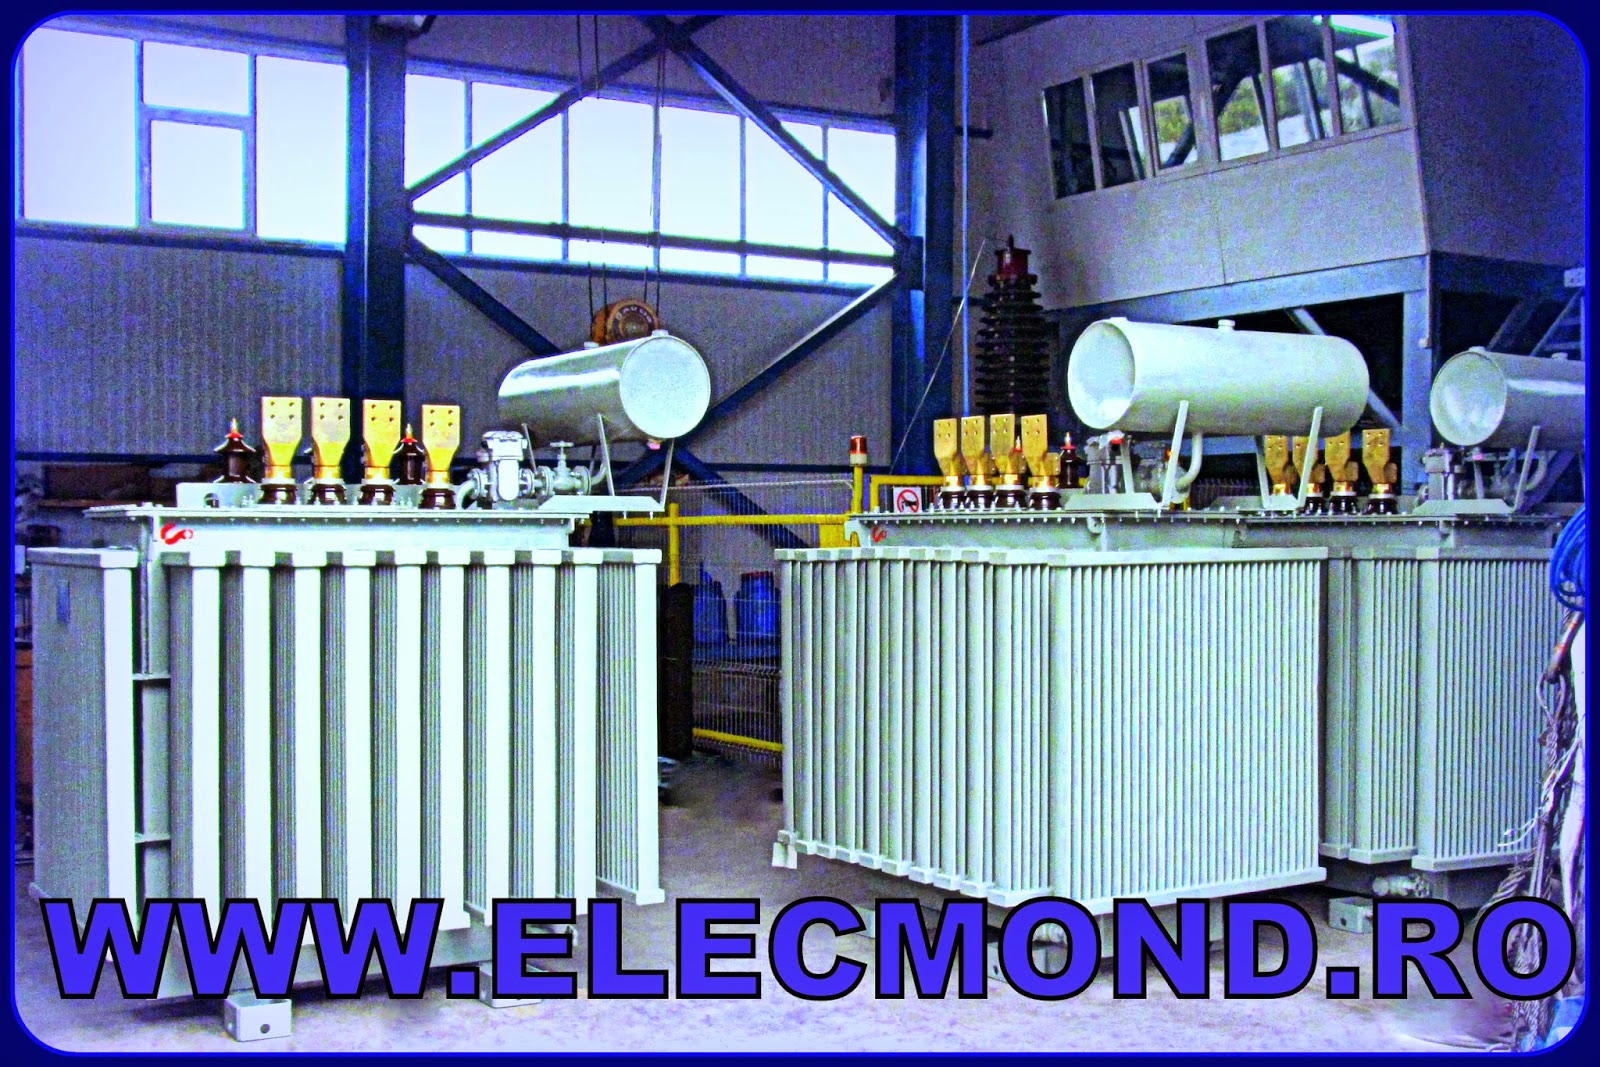 TRANSFORMATOARE 1600 kVA 6/0,4 kV ,TRANSFORMATOARE ELECTRICE, OFERTA TRANSFORMATOARE, PRET TRANSFORMATOR , TRAFO  , OFERTA TRANSFORMATOARE ,transformatoare medie tensiune, TRANSFORMATOARE ,elecmond electric  TRANSFORMATOR 1600, elecmond